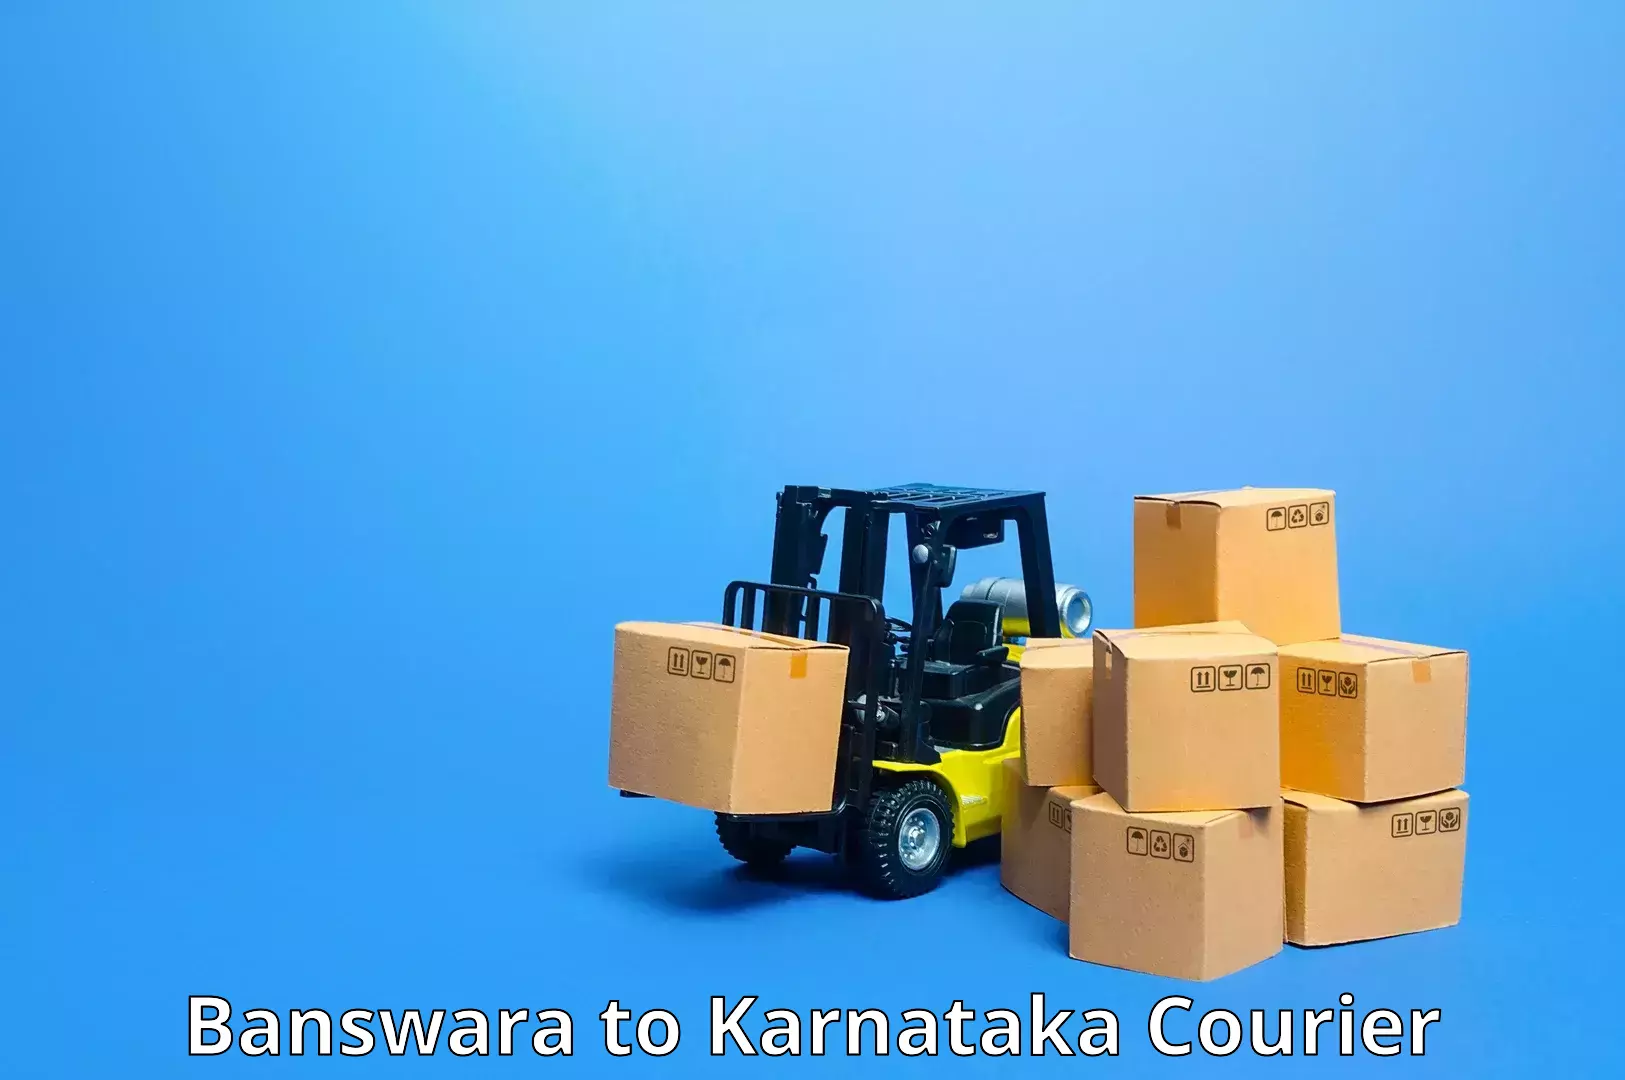 Easy access courier services in Banswara to Kolar